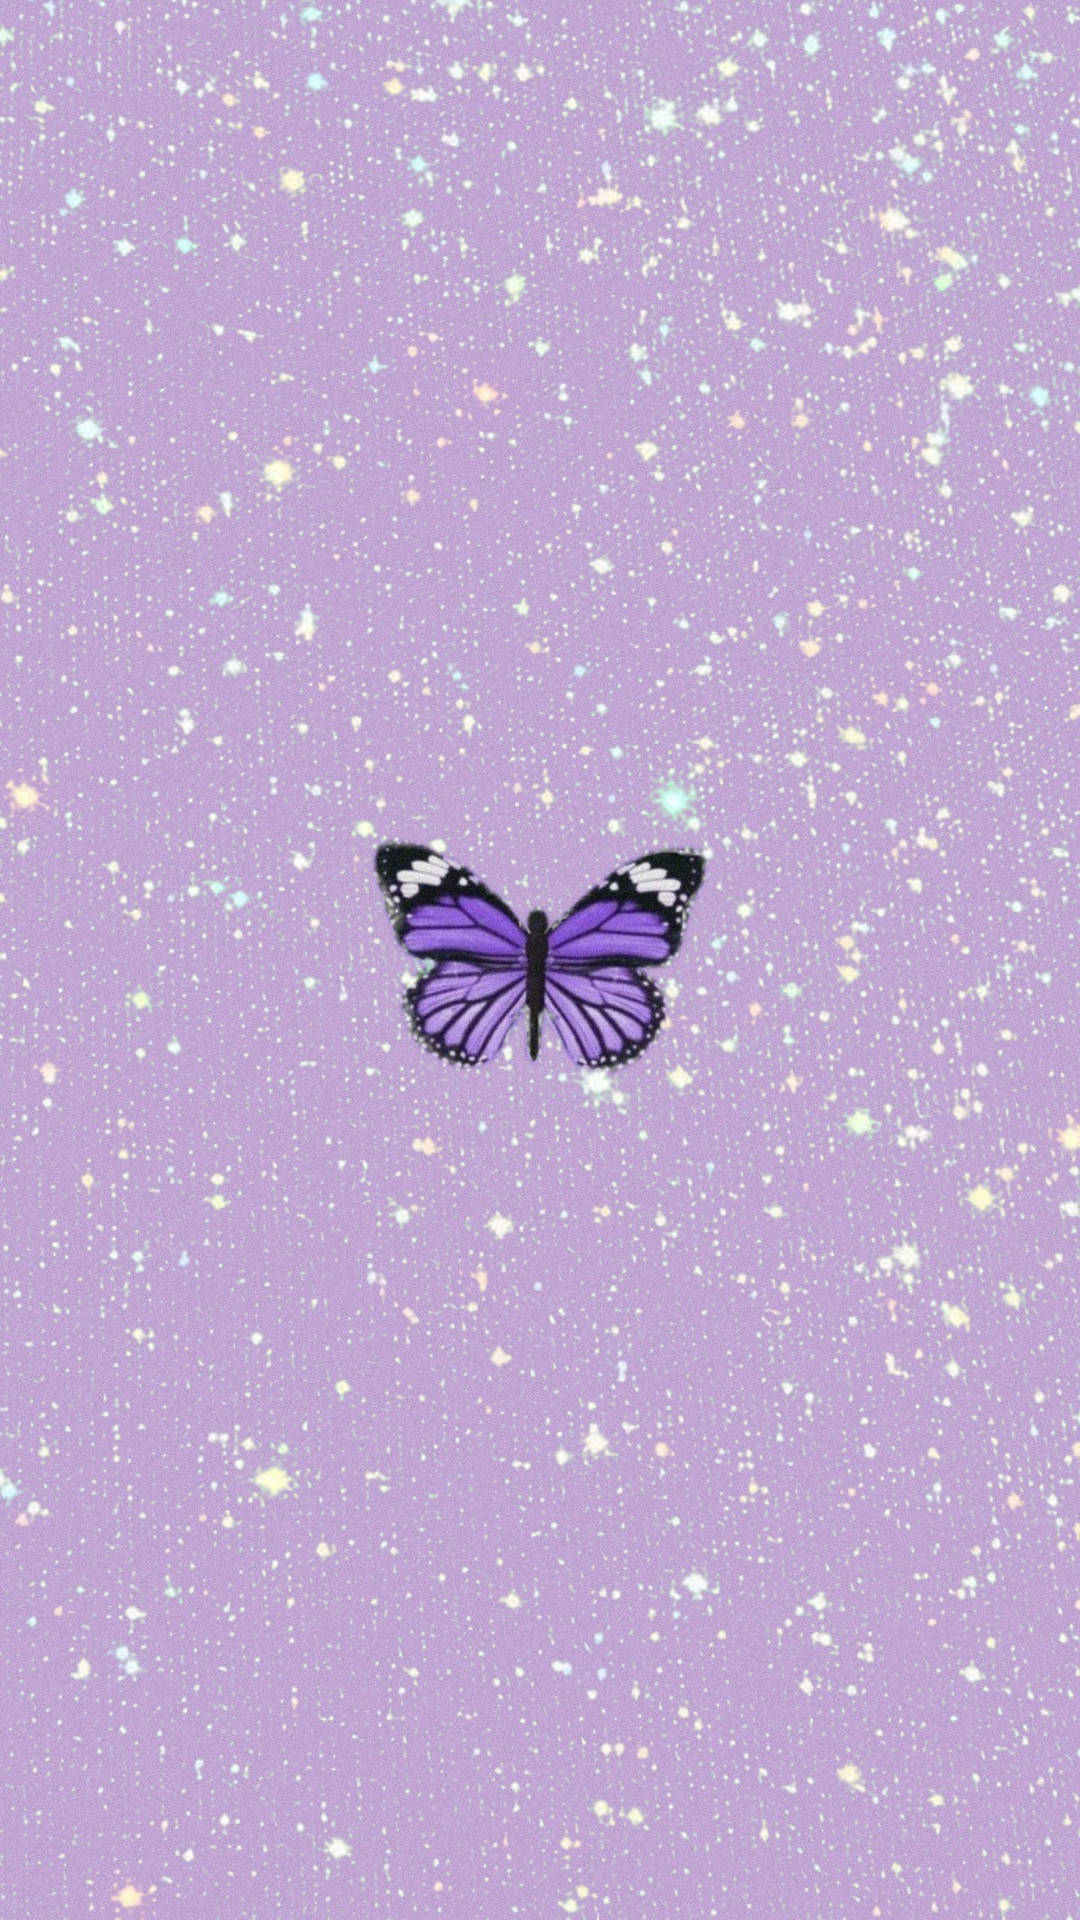 Free Purple Butterfly Wallpaper Downloads, [100+] Purple Butterfly  Wallpapers for FREE 